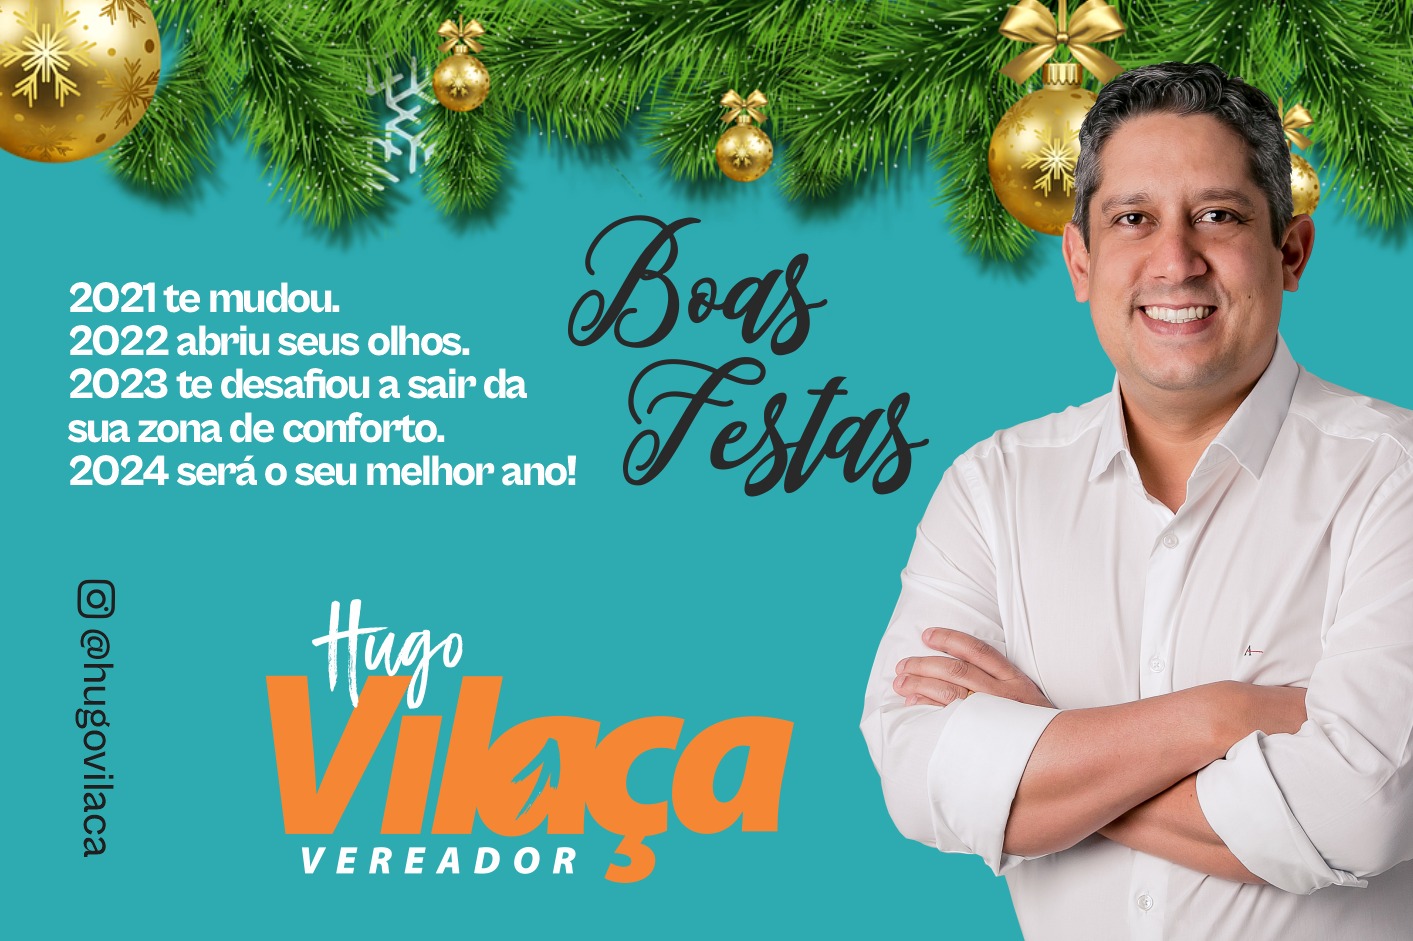 Mensagens de boas festas do vereador Hugo Vilaça